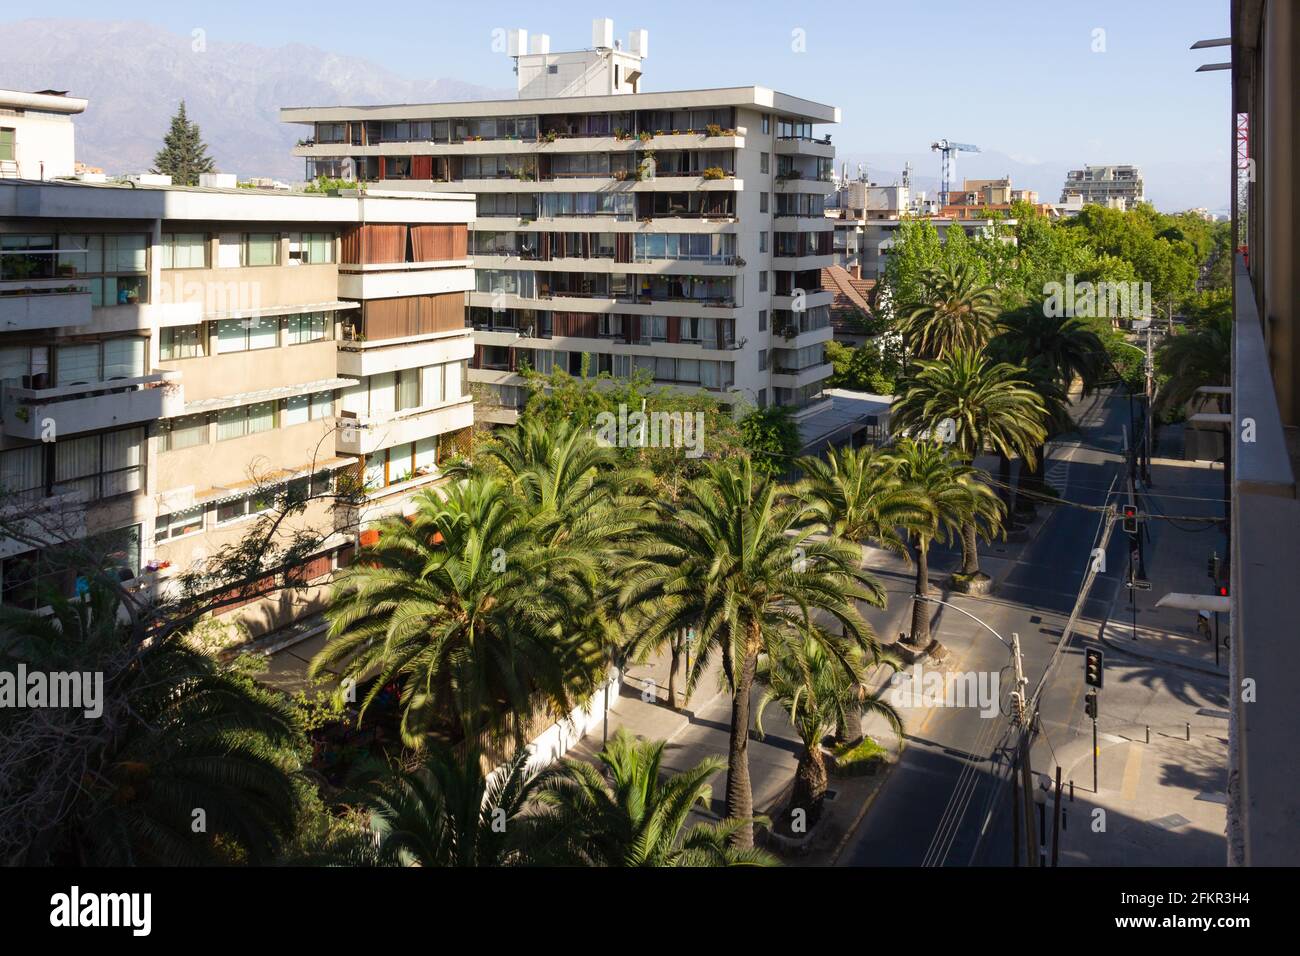 Appartements vue depuis la terrasse avec palmiers au milieu de la route et la chaîne de montagnes Los Andes en arrière-plan. Quartier résidentiel Banque D'Images